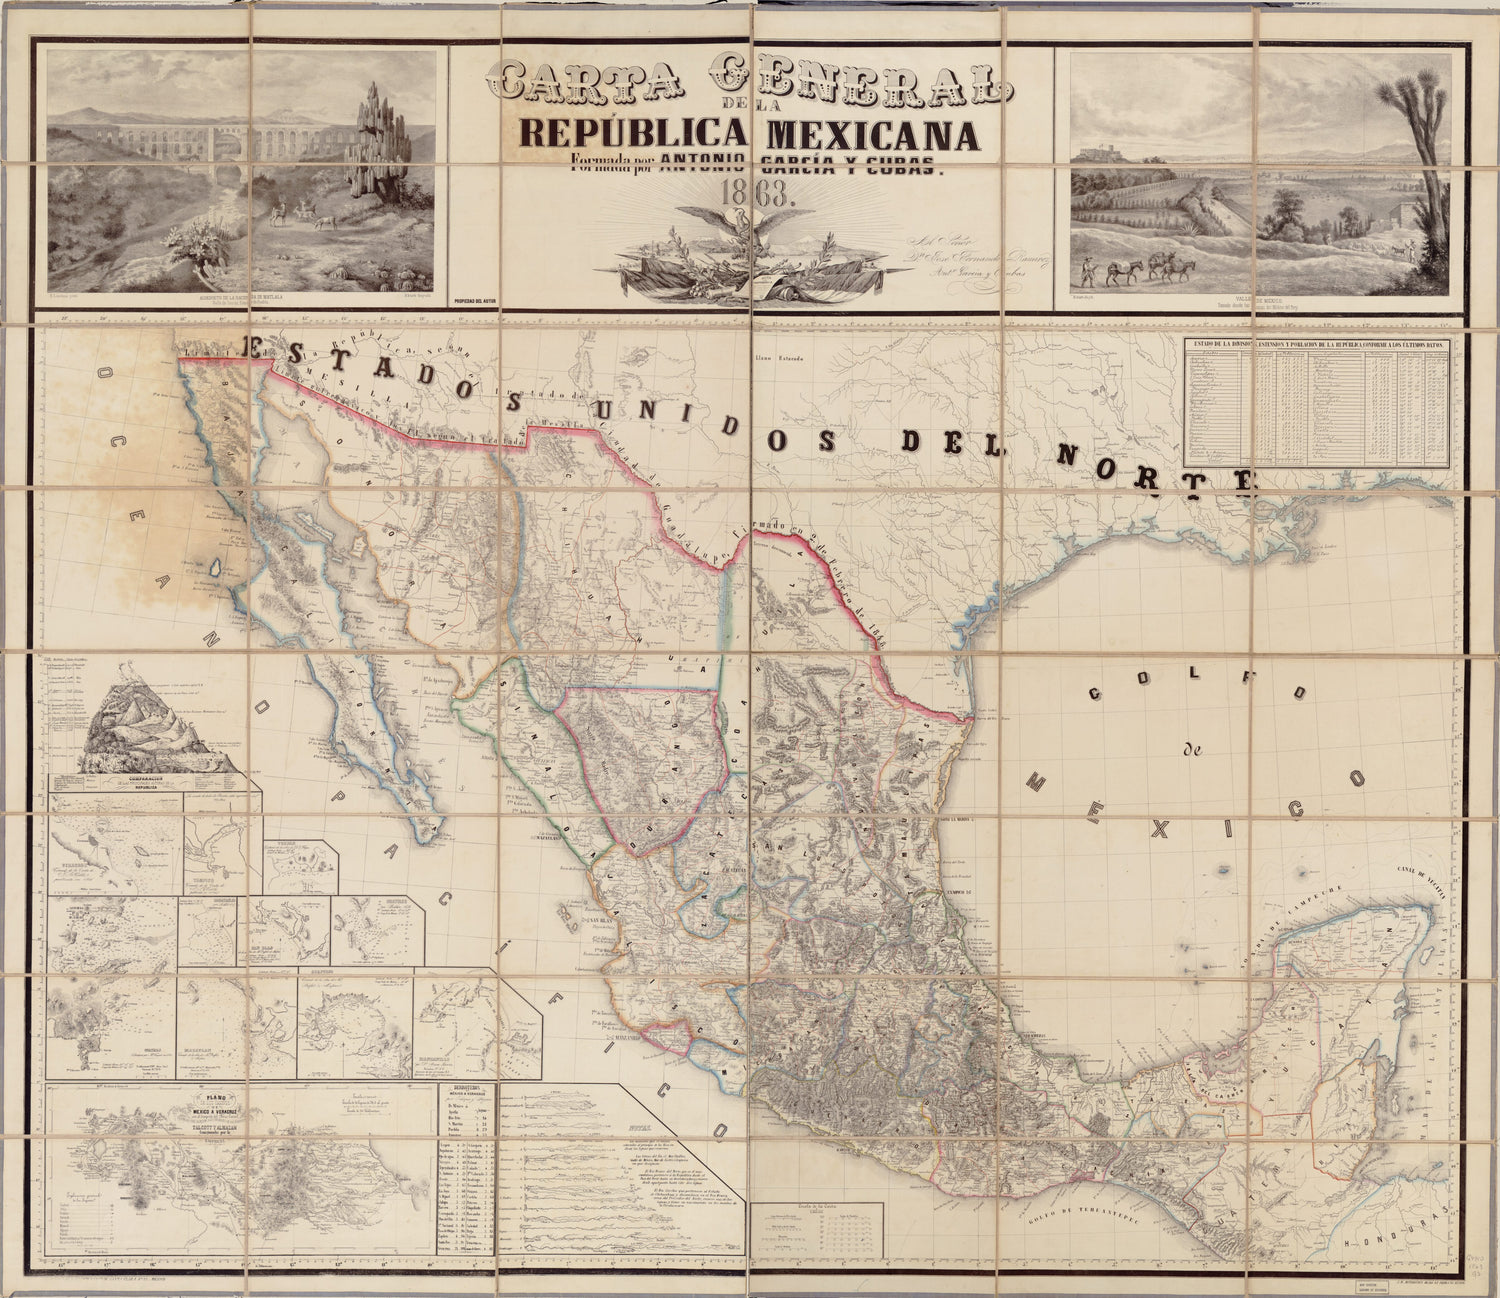 This old map of Carta General De La República Mexicana from 1863 was created by Antonio García Cubas in 1863